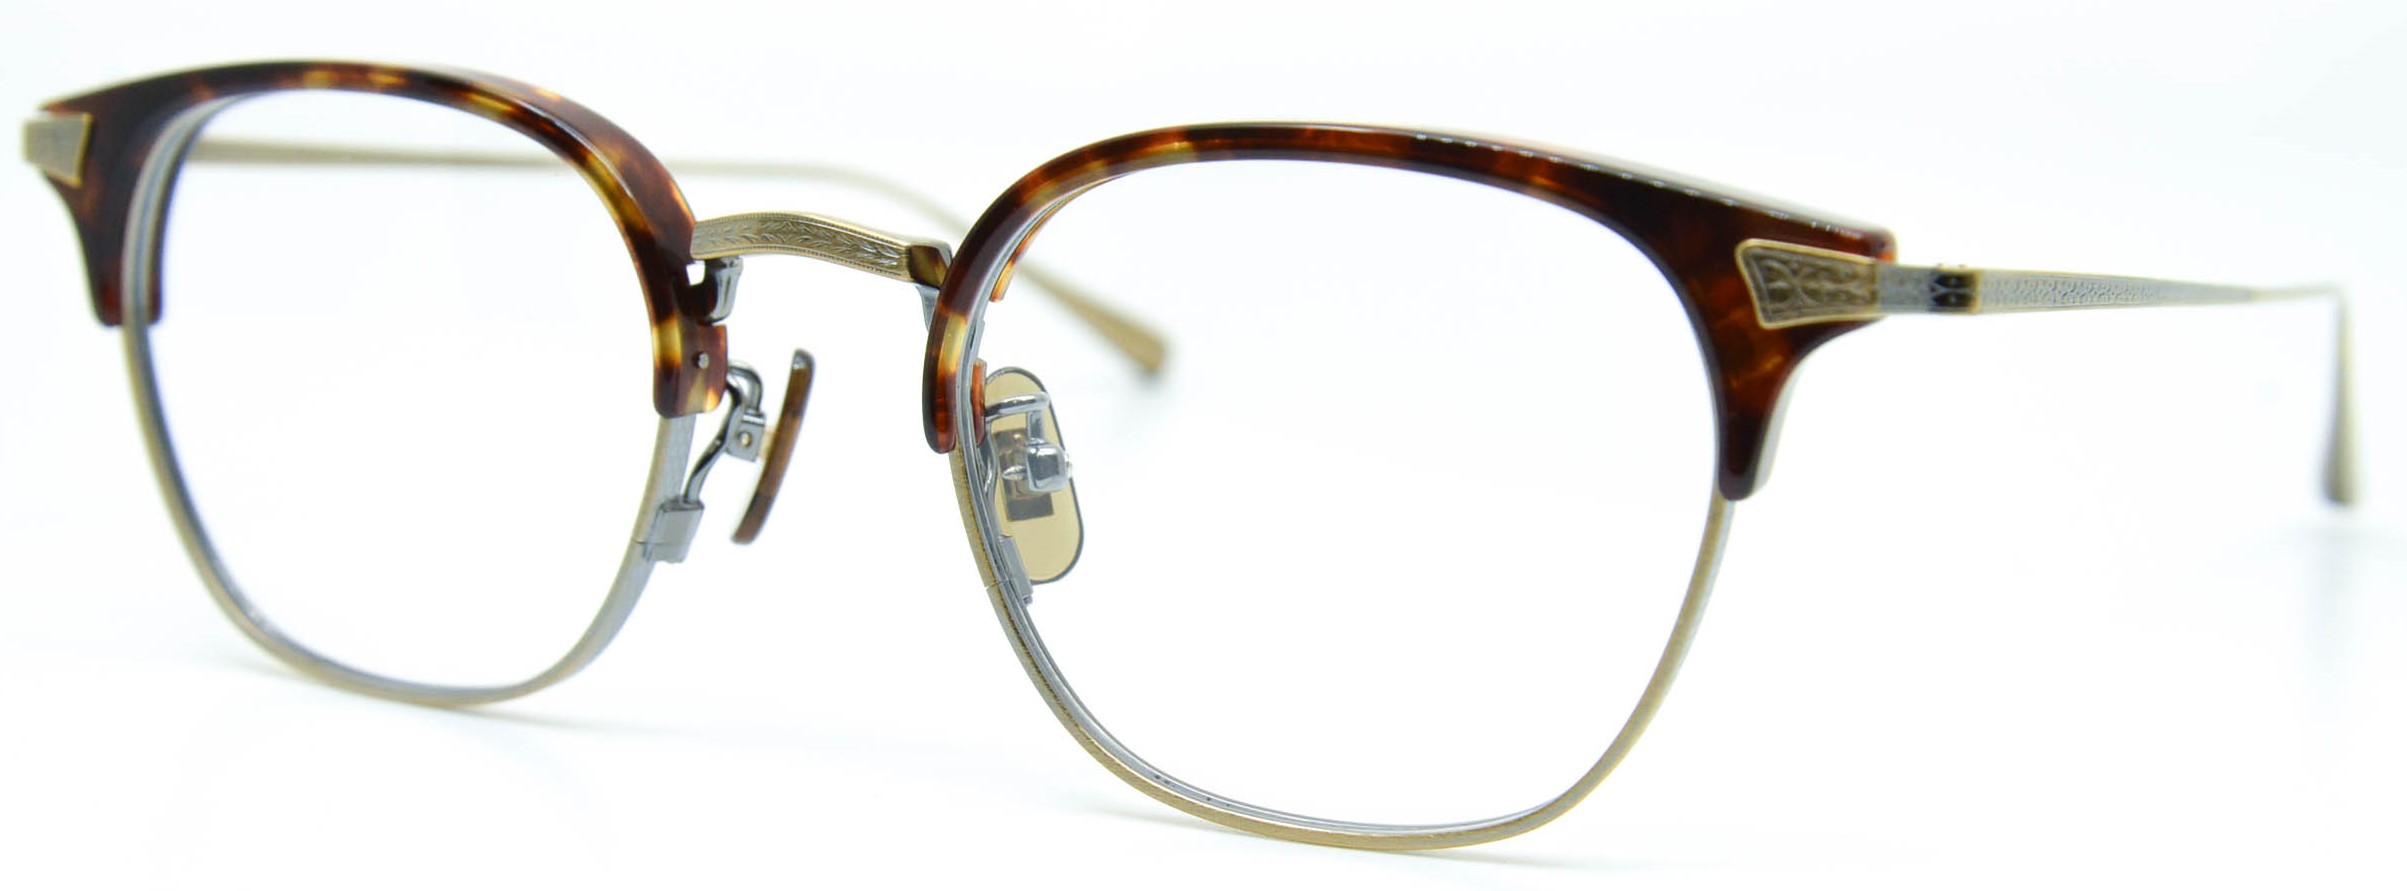 眼鏡のカラータイプC-2 Tortoise/At-Gold